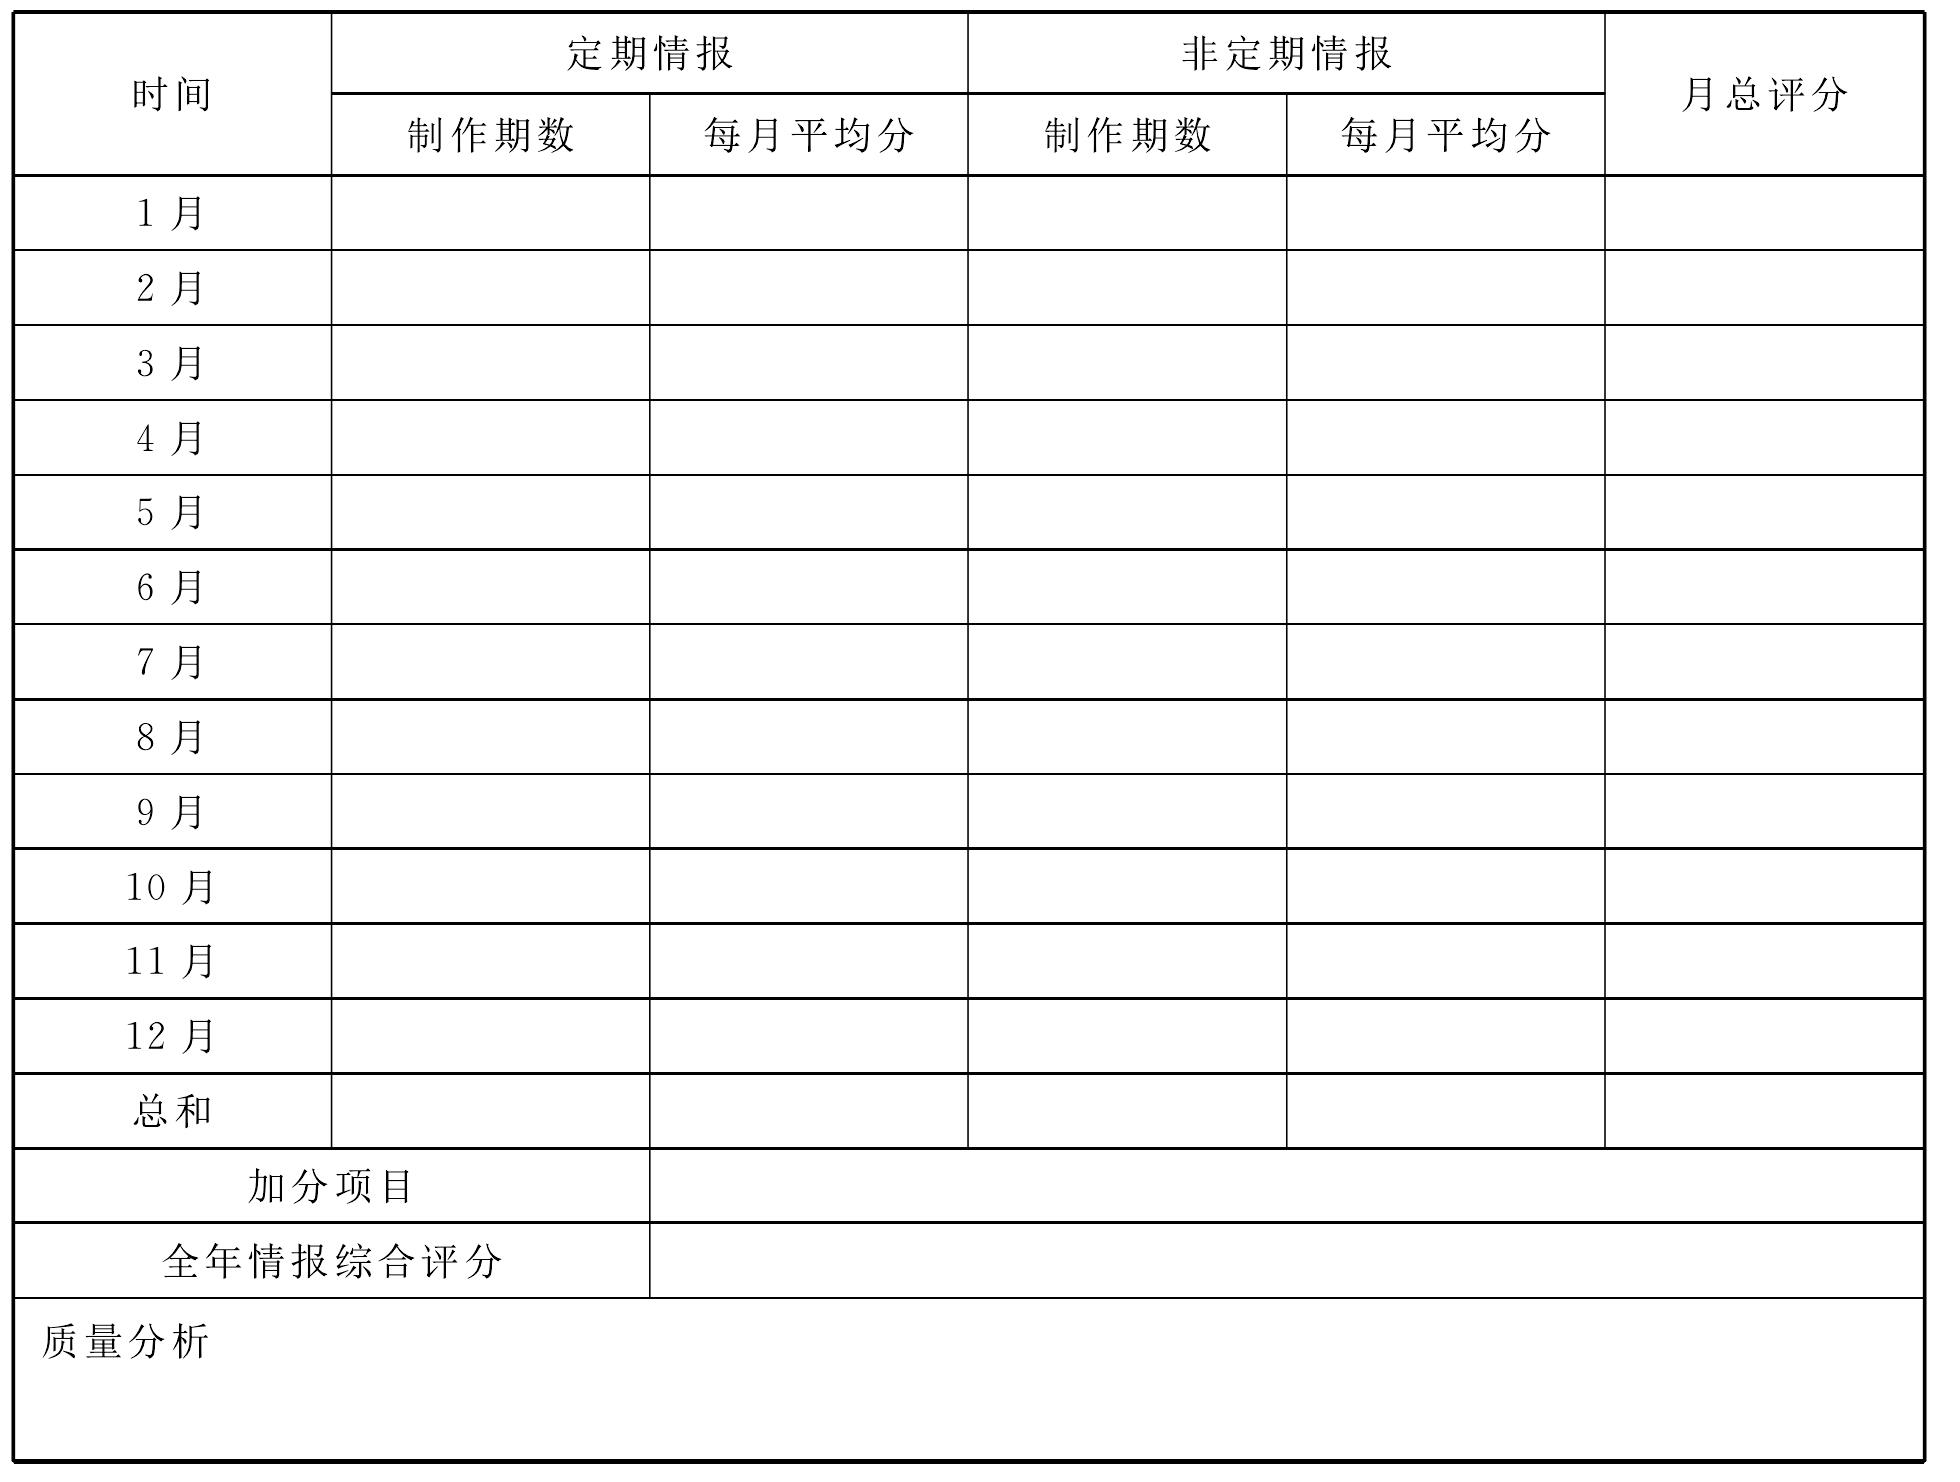 四川省农业气象情报业务质量考核办法(试行)